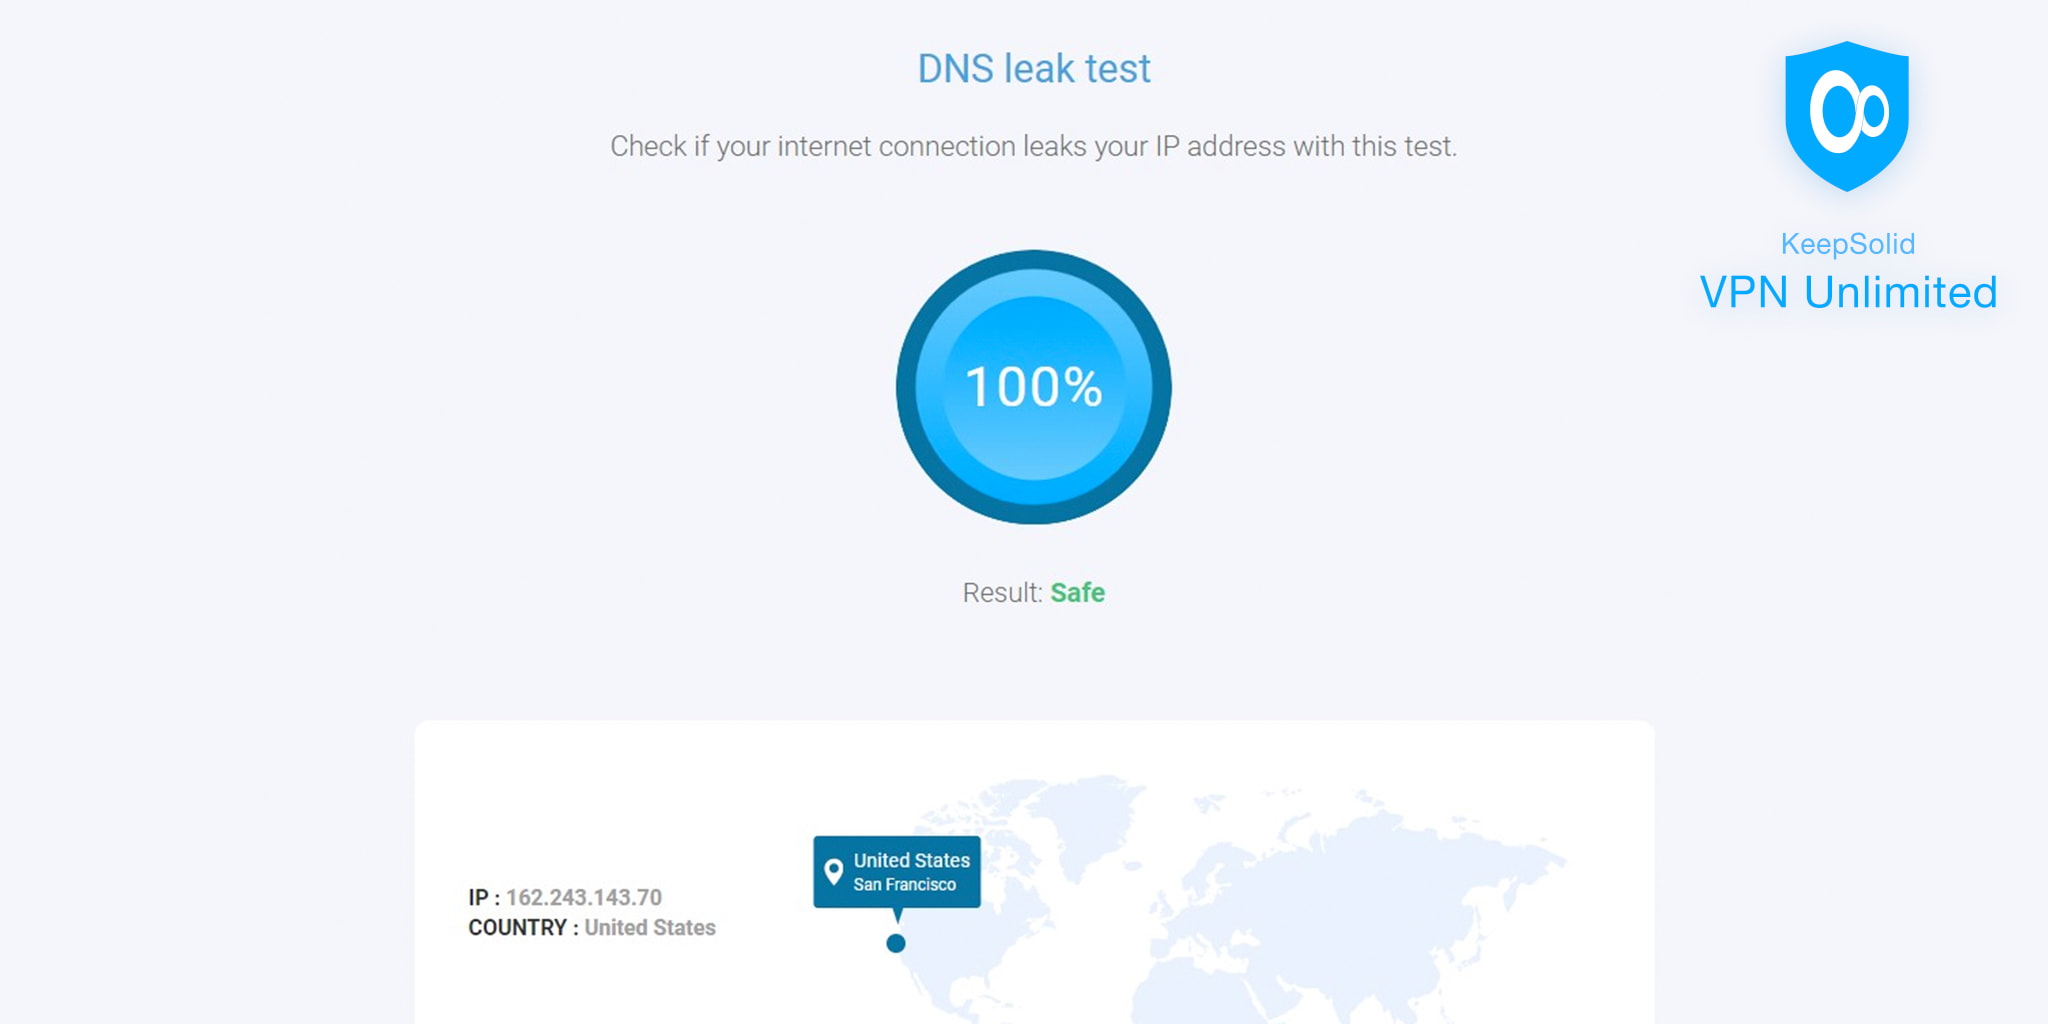 KeepSolid VPN Unlimited. DNS Leak test